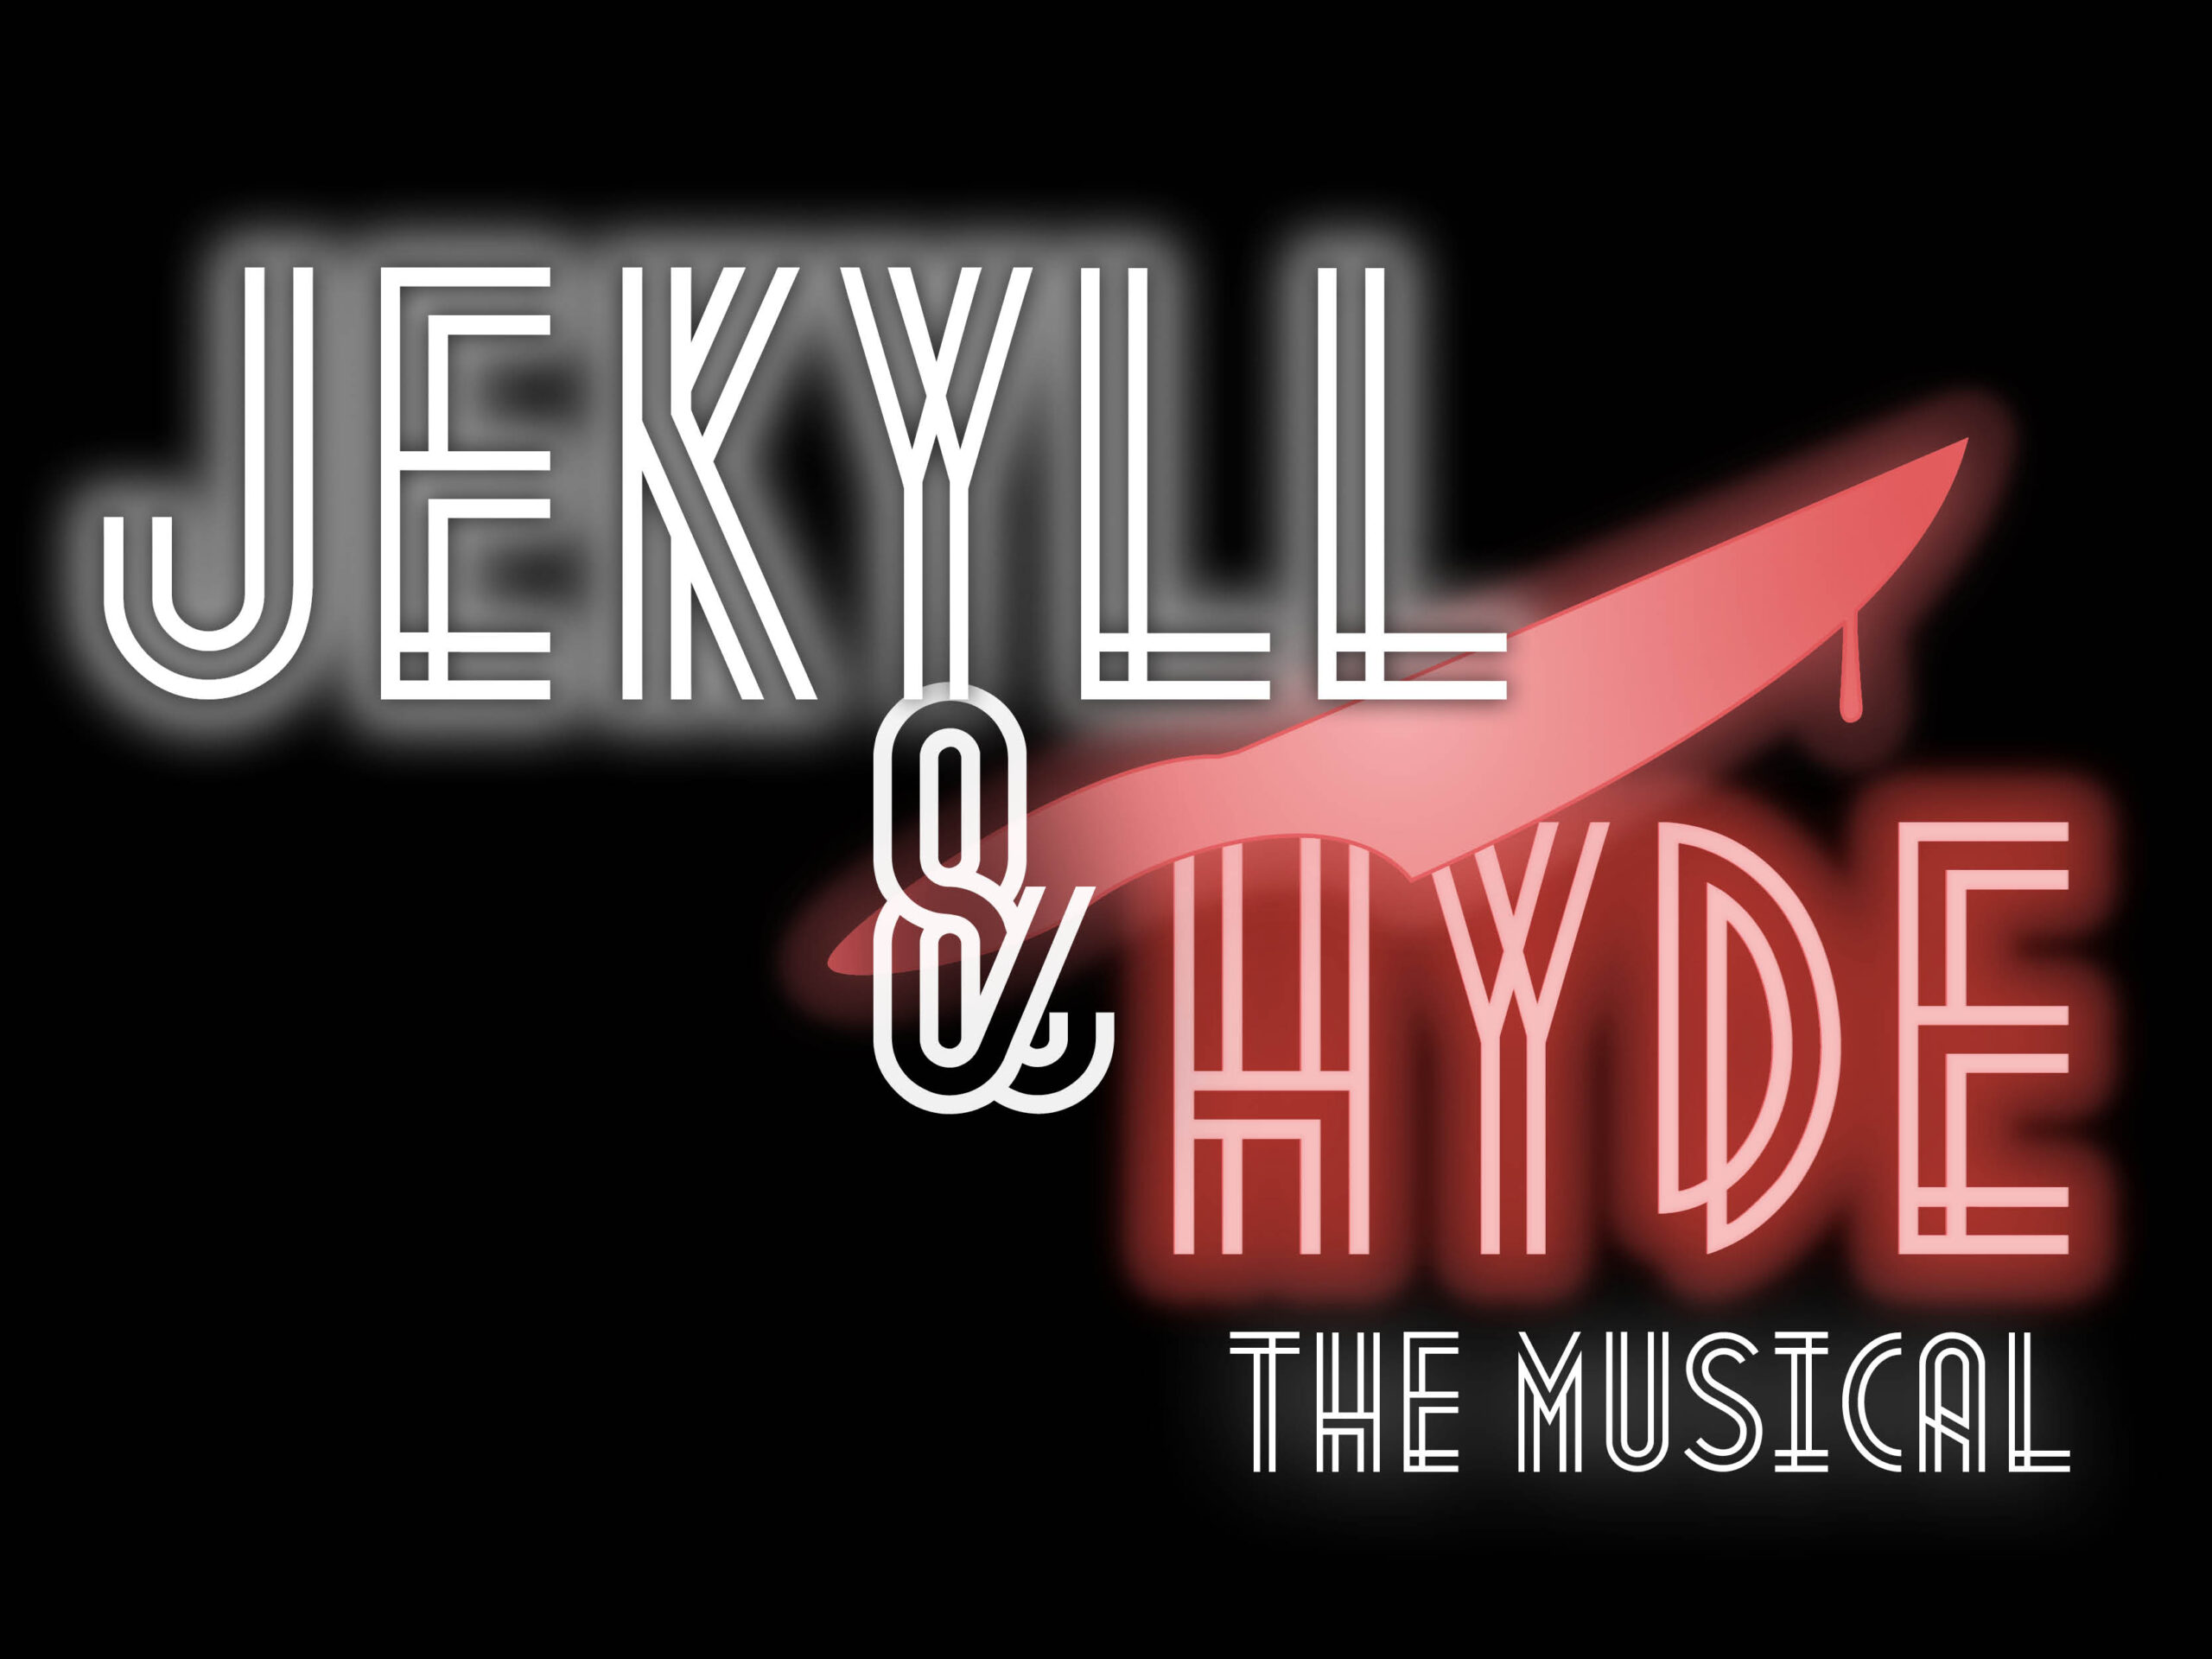 Jekyll and Hyde logo